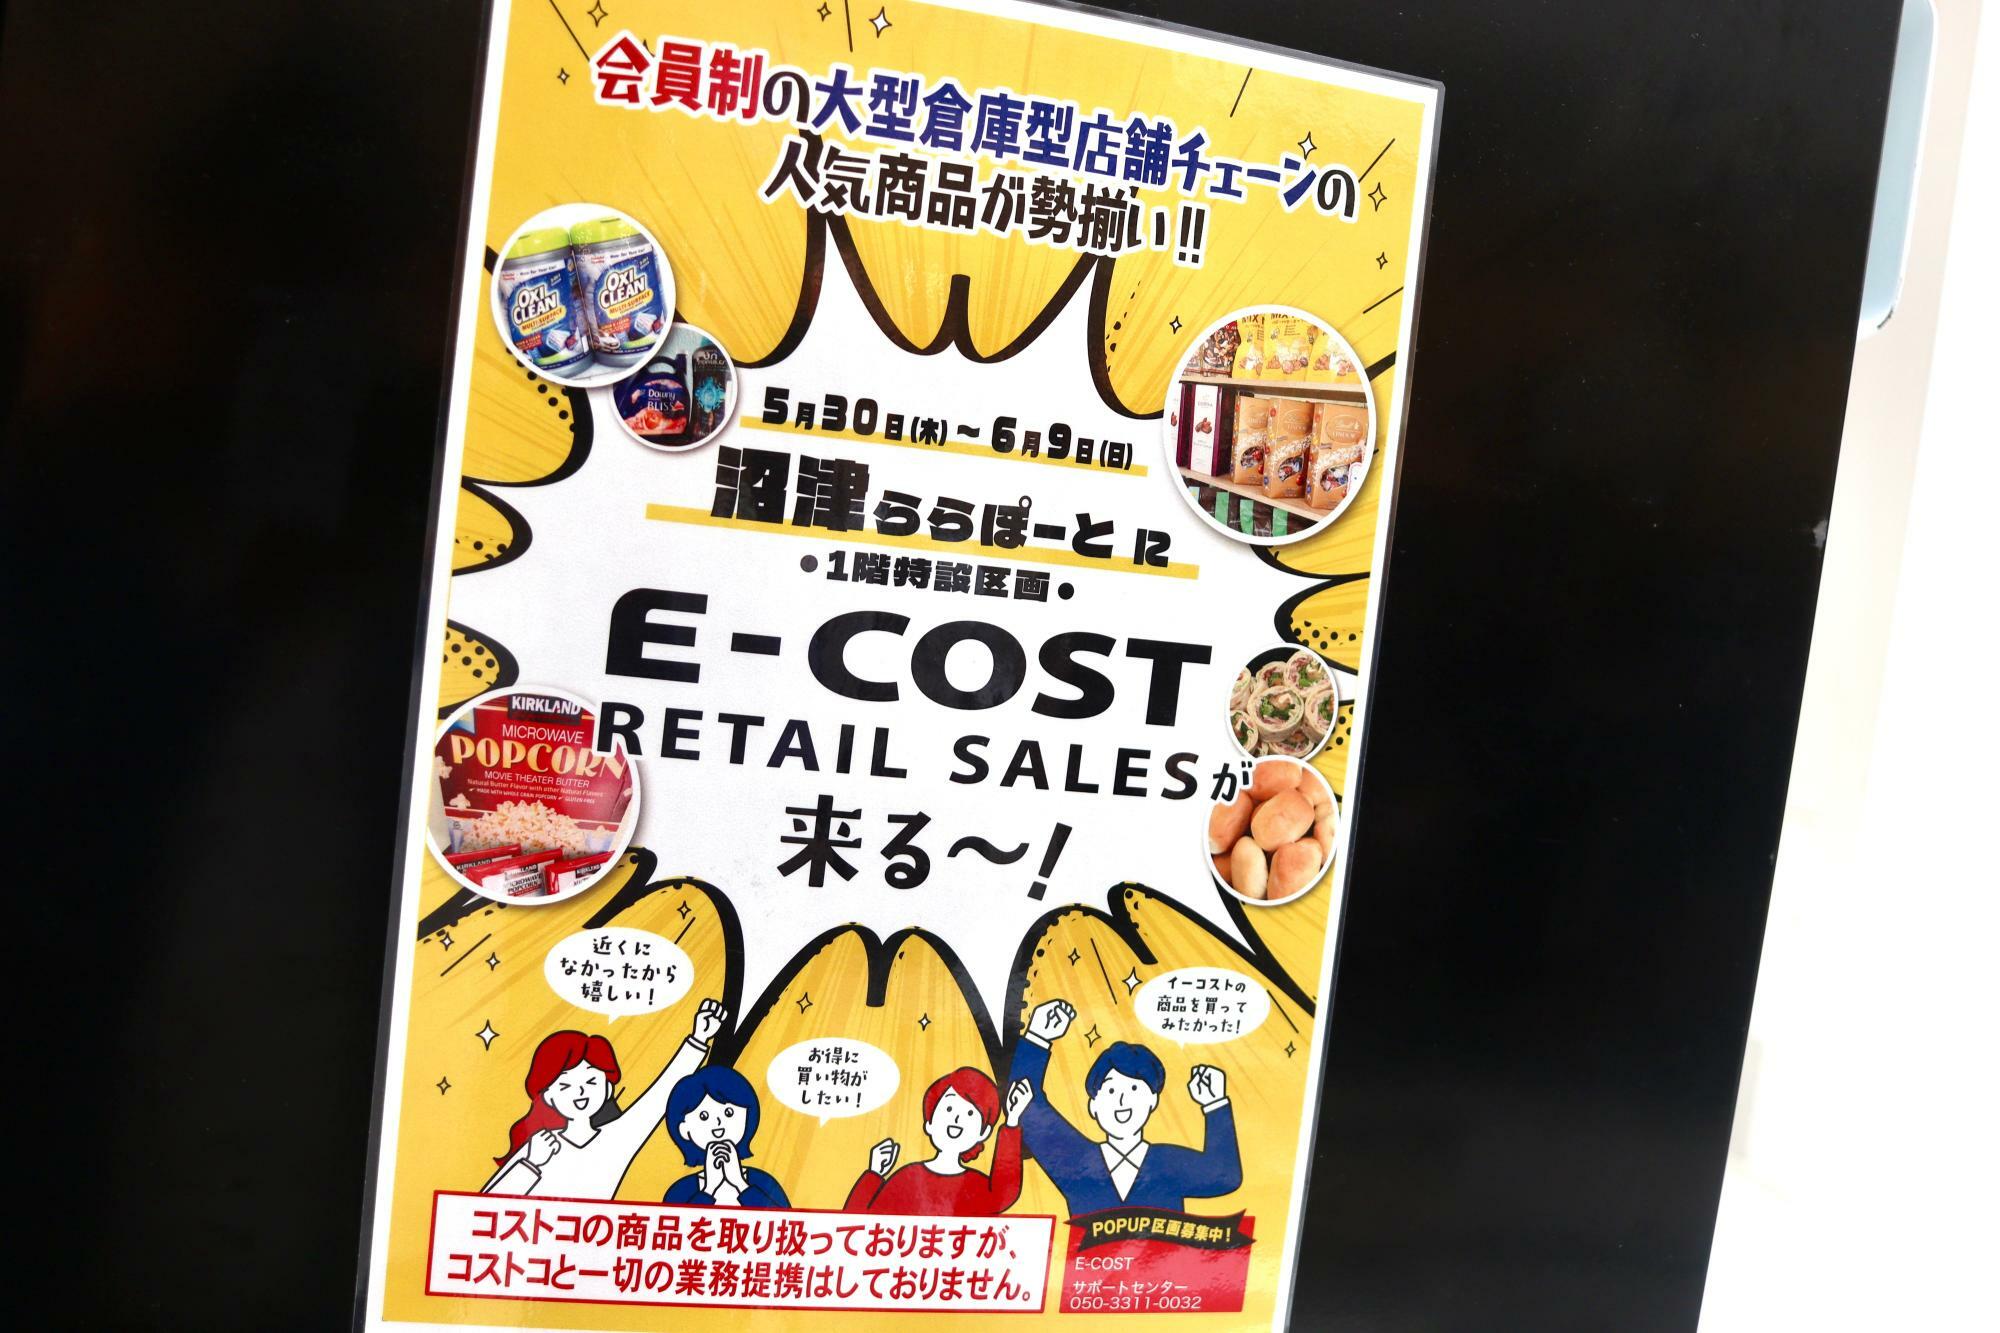 「E-COST」さんの催事販売